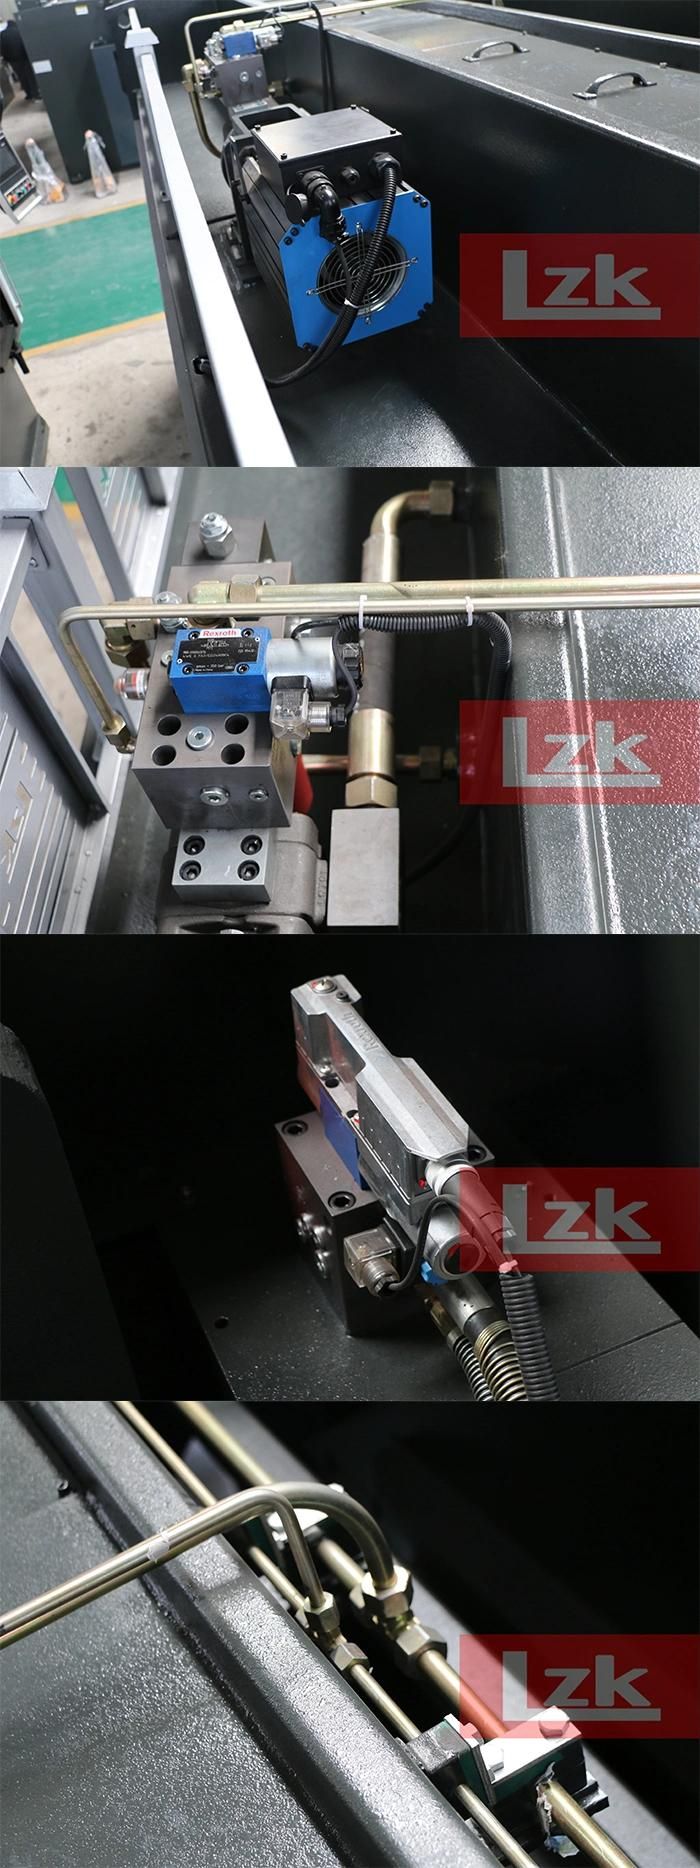 Lzk Hpb Hydraulic CNC Press Brake 200t4000 Da58t 4+1 Axes